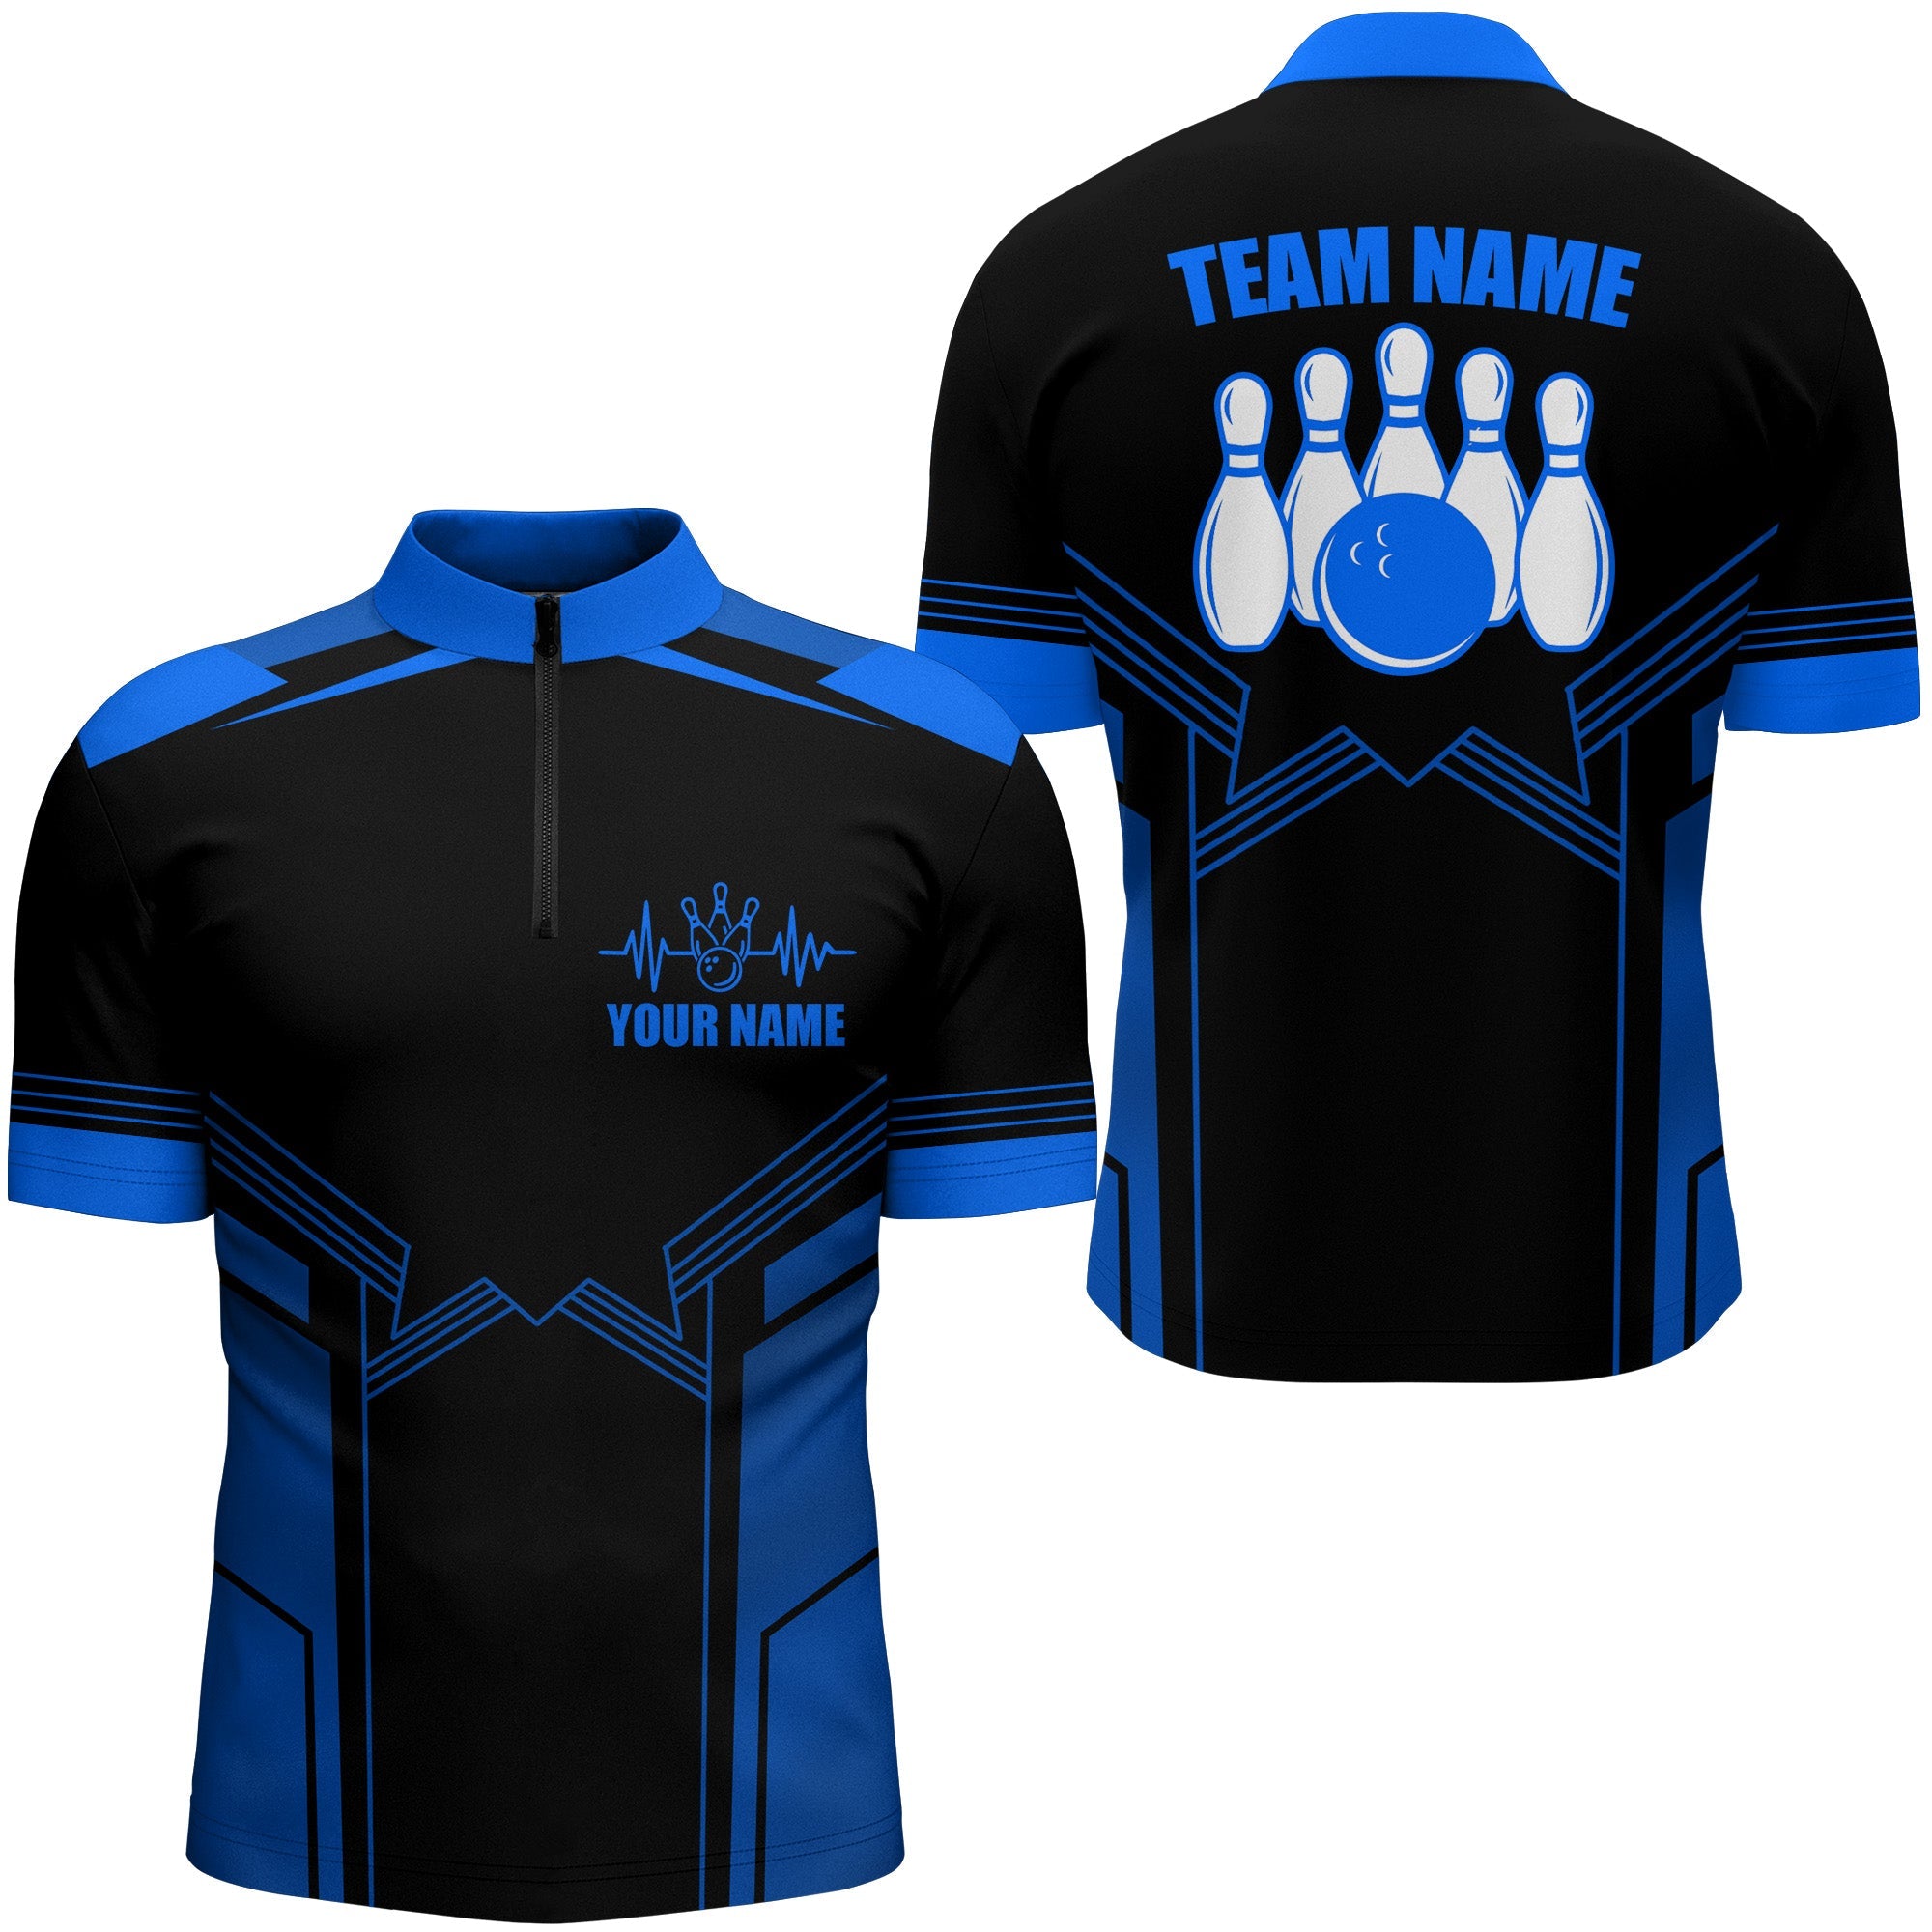 Bowling Customized Blue Jersey Shirt, Heartbeat Bowling Tenpin Quarter Zip Shirt, Outfit For Bowlers, Bowling Team